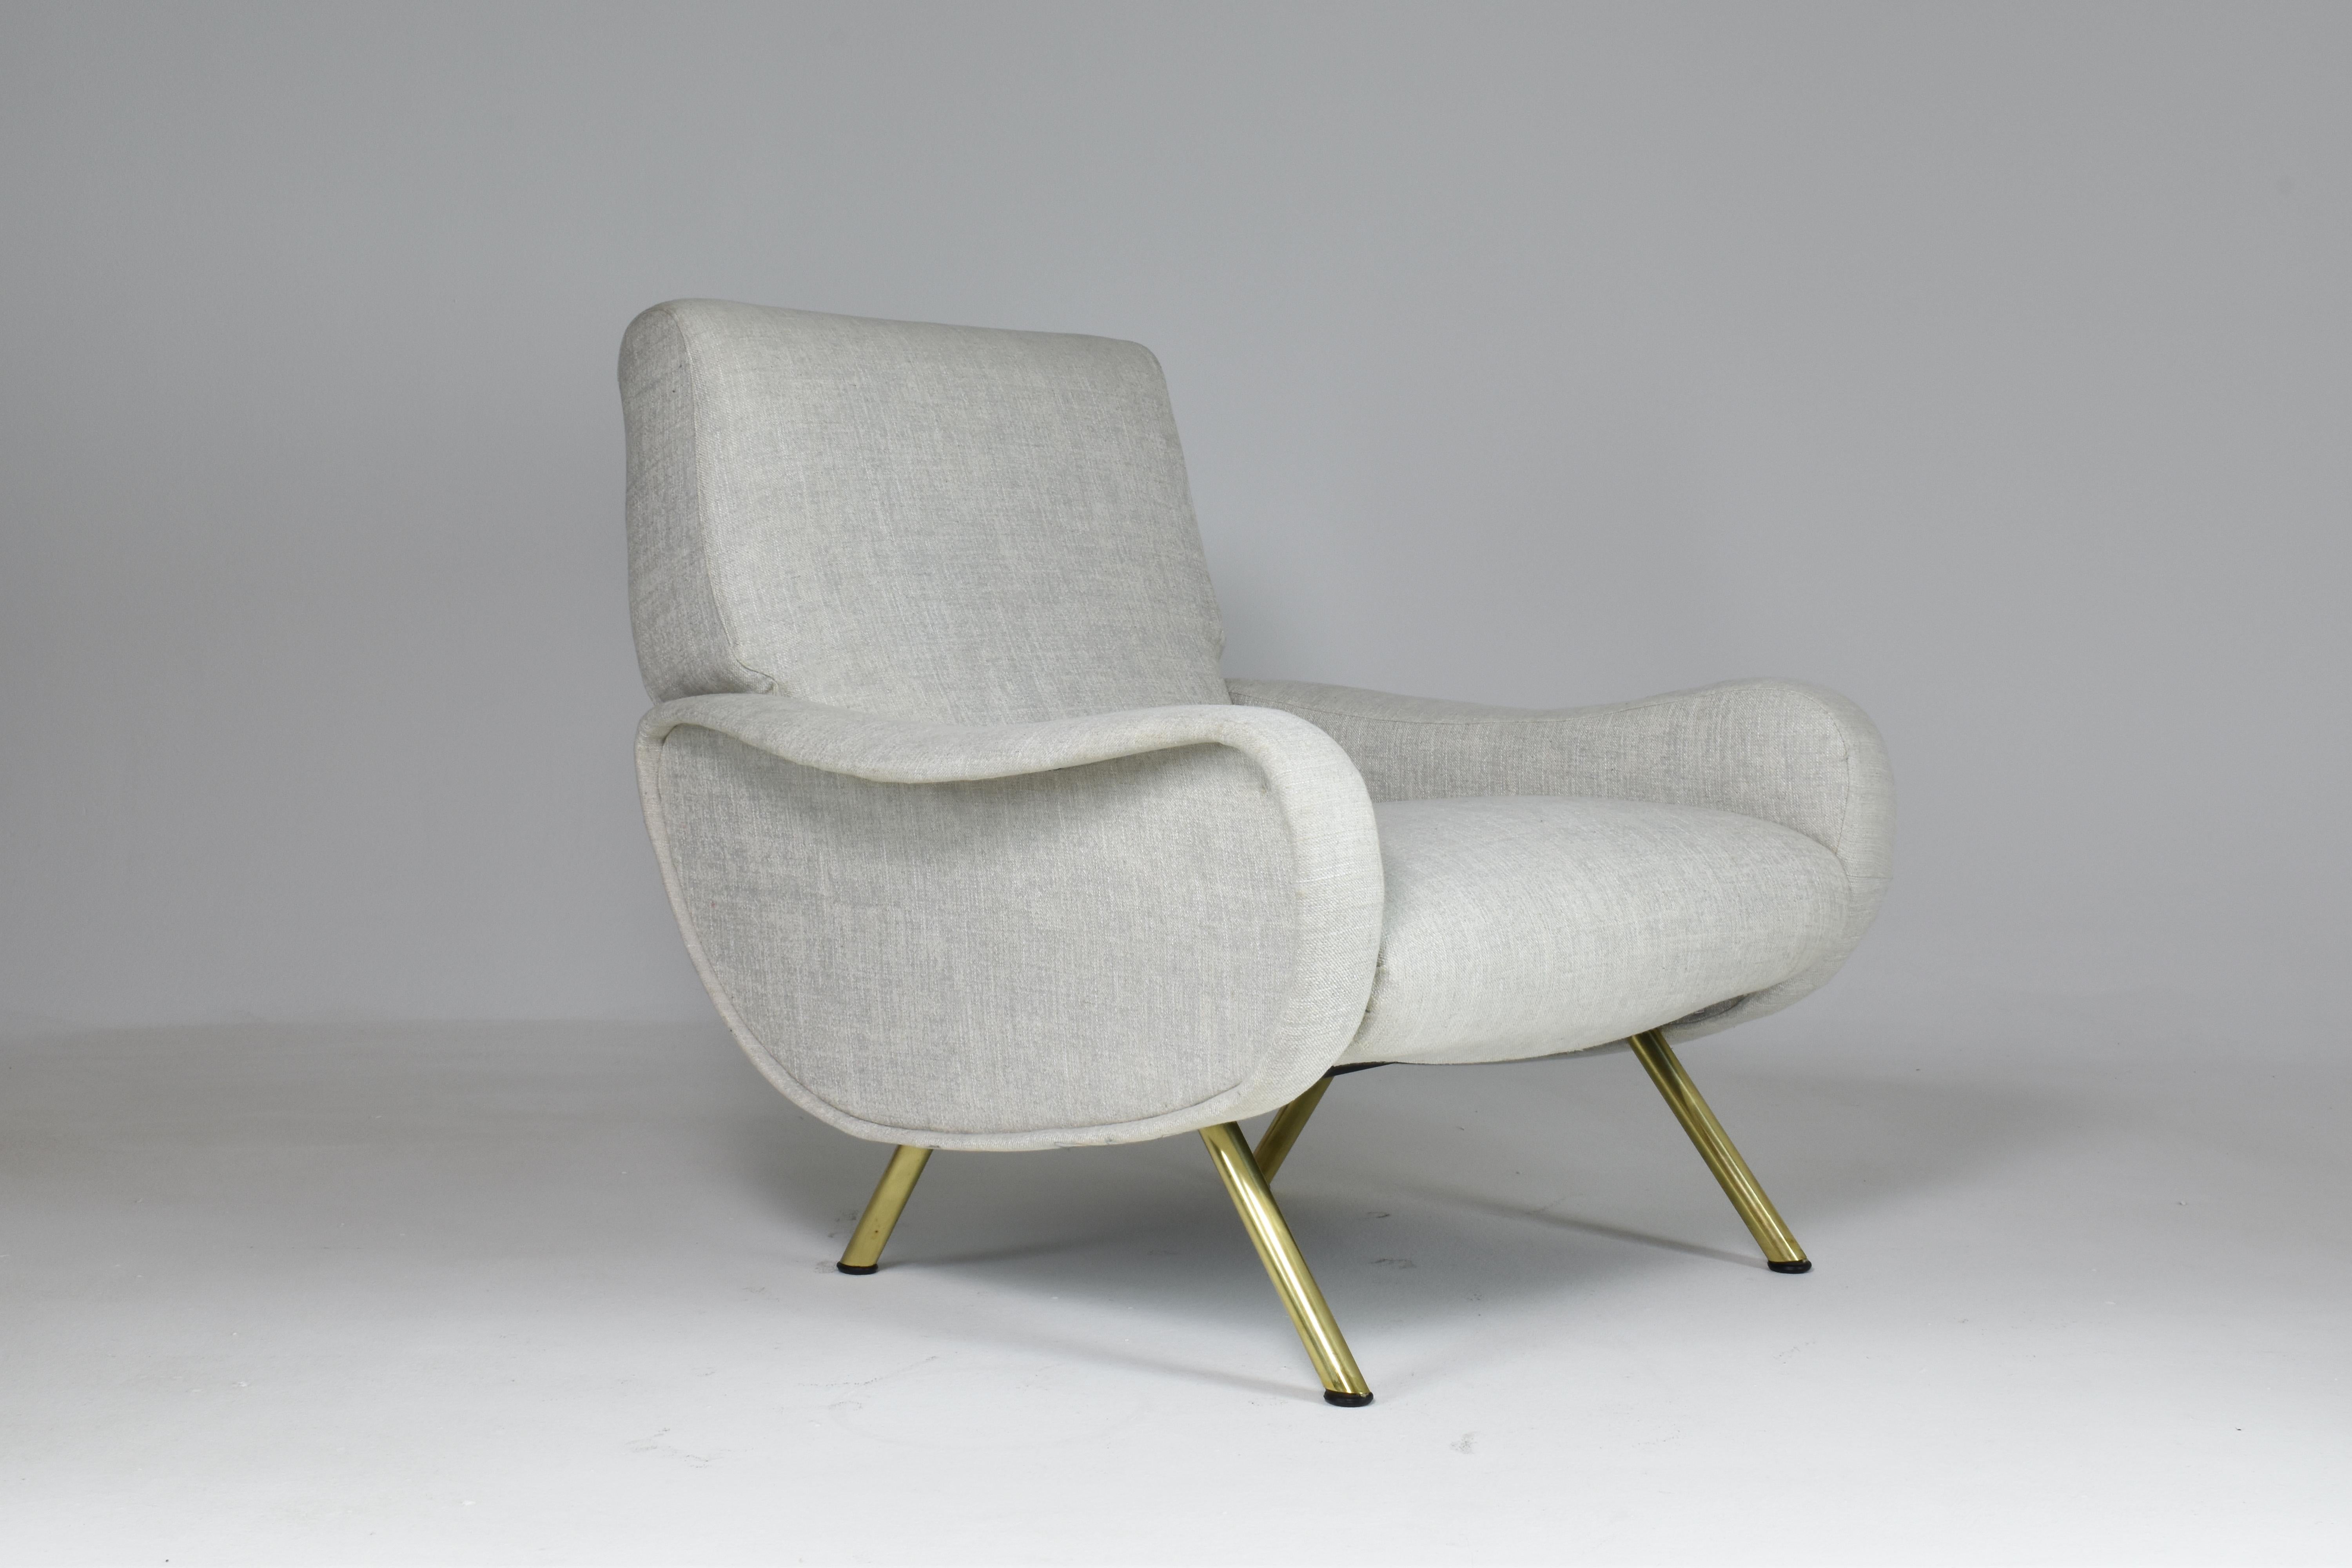 Die Ikone des 20. Jahrhunderts, der Vintage-Stuhl Lady, wurde 1951 von Marco Zanuso für Arflex in Italien entworfen. Das sehr bequeme Design zeichnet sich durch gespreizte, fachmännisch polierte Messingbeine aus und ist vollständig restauriert und